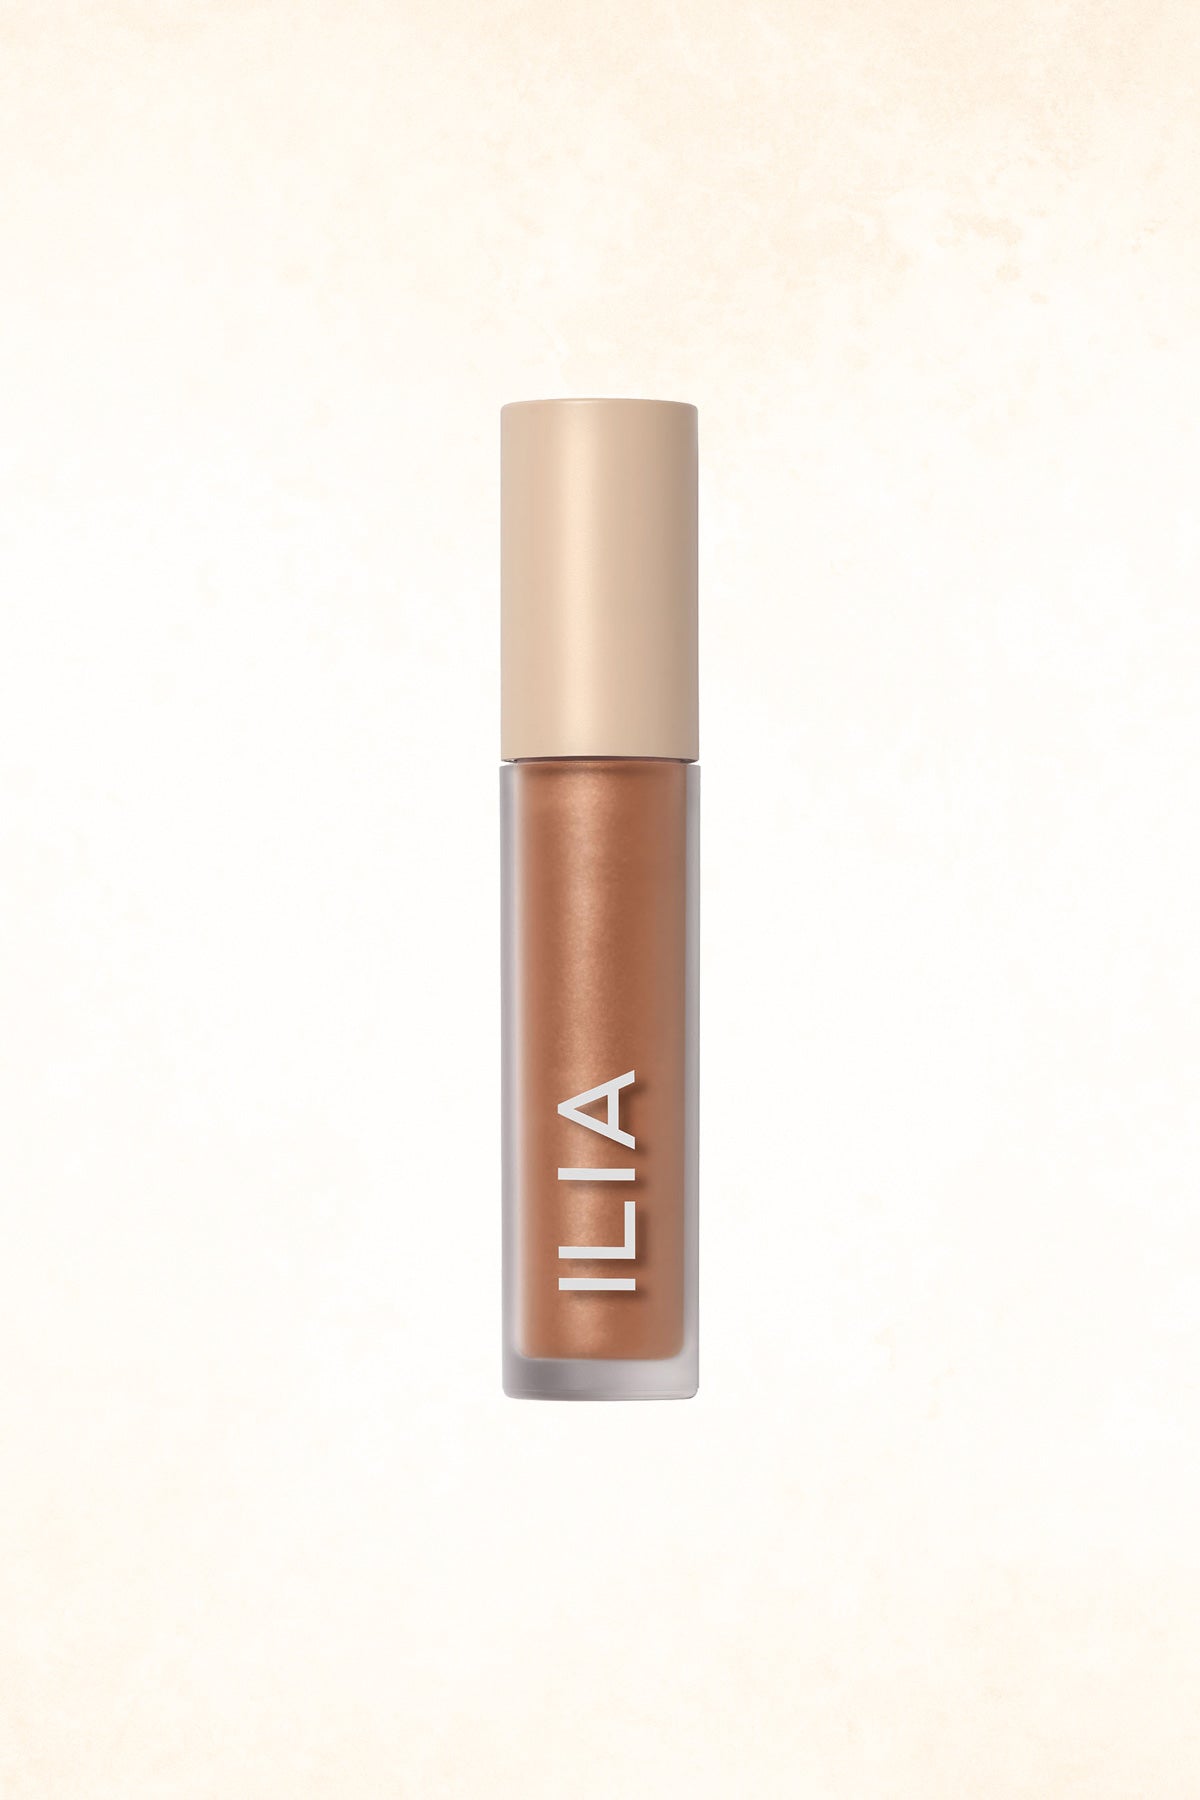 ILIA - Liquid Powder Chromatic Eye Tint - Burnish